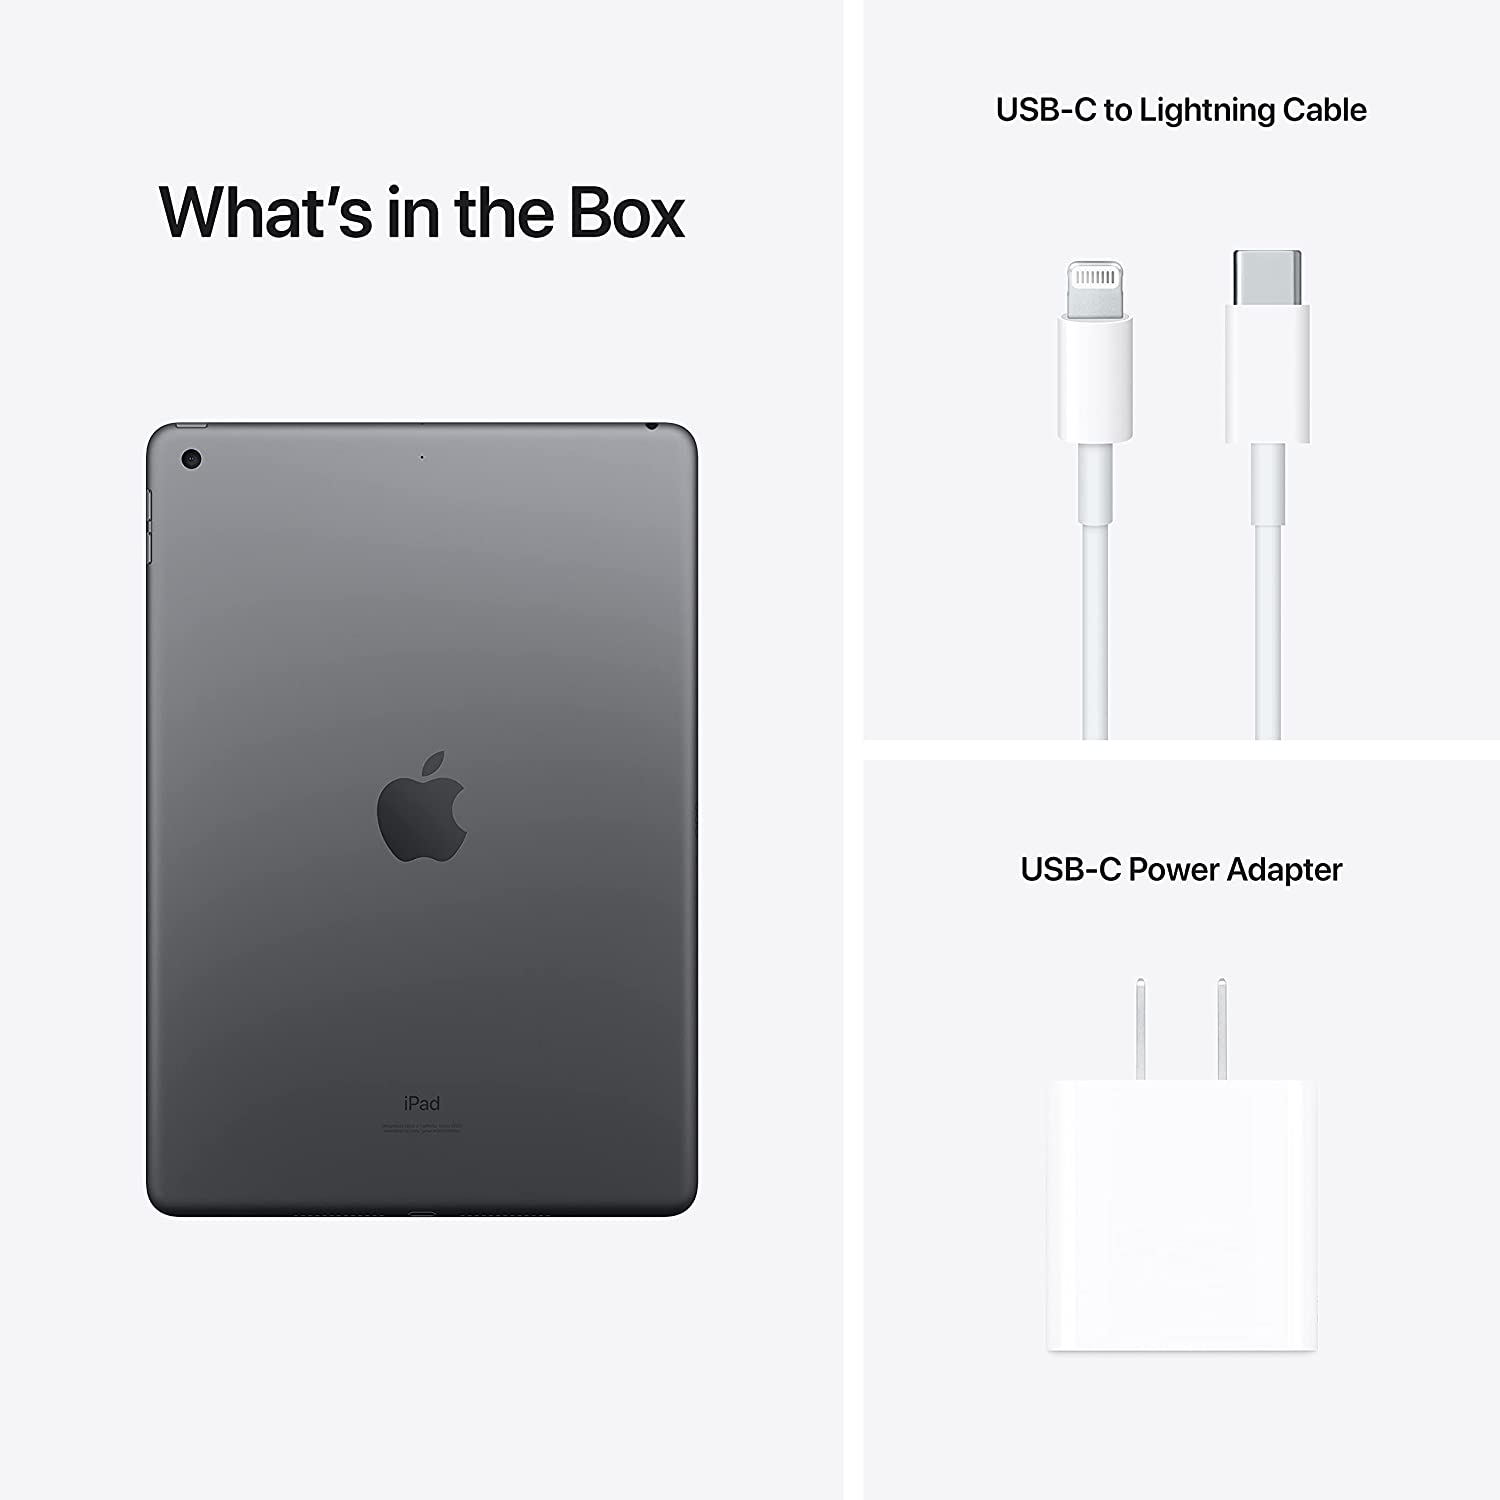 Apple iPad 9th Gen (MK2K3HN/A) Space Grey, 64GB ROM, 10.2 inch with Wi-Fi Only, iOS 15